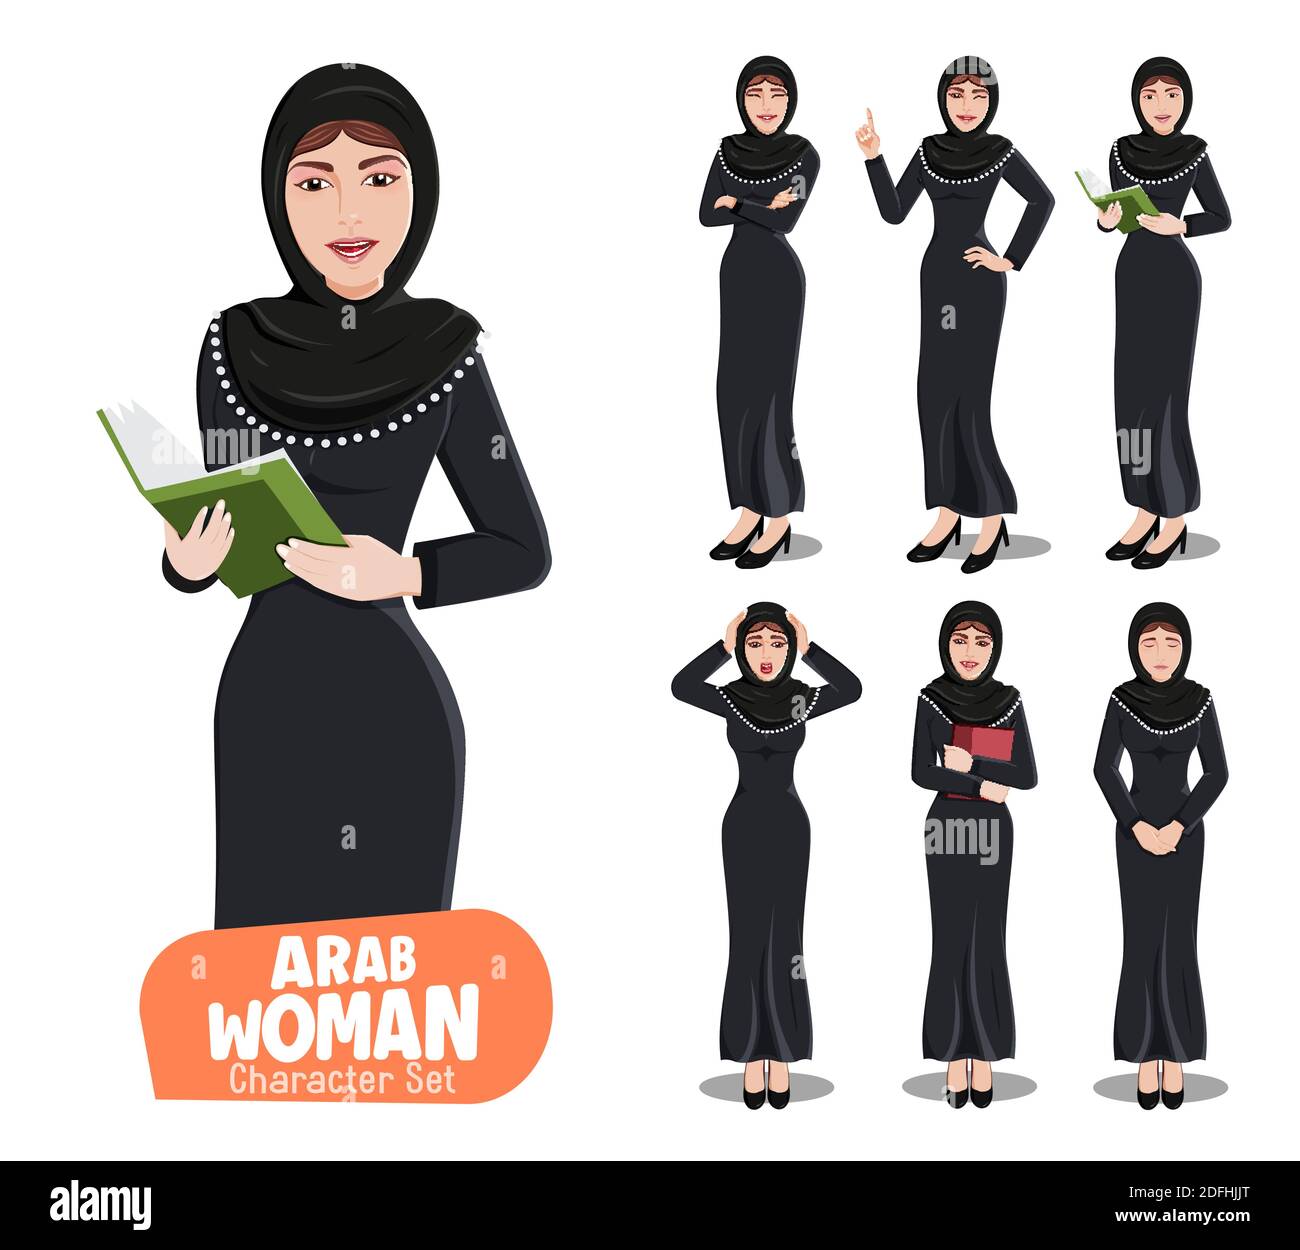 Set di caratteri vettoriali per donna araba. Personaggio arabo femminile in abito nero tradizionale con diverse espressioni facciali come felice, sorpresa e triste. Illustrazione Vettoriale